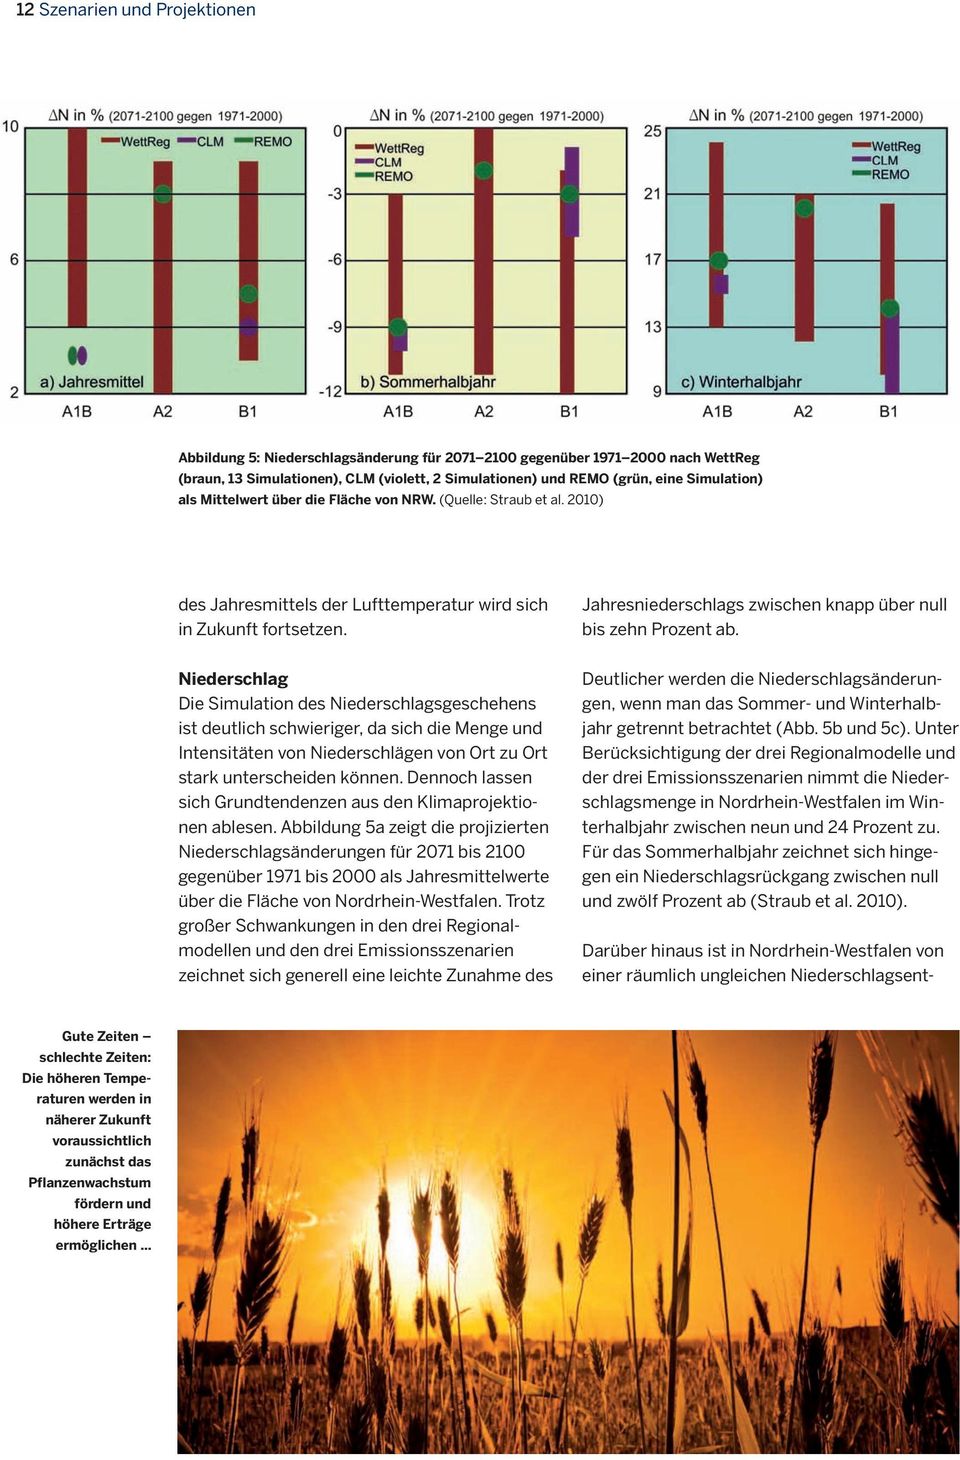 2010) Darüber hinaus ist in Nordrhein-Westfalen von einer räumlich ungleichen Niederschlagsentdes Jahresmittels der Lufttemperatur wird sich in Zukunft fortsetzen.